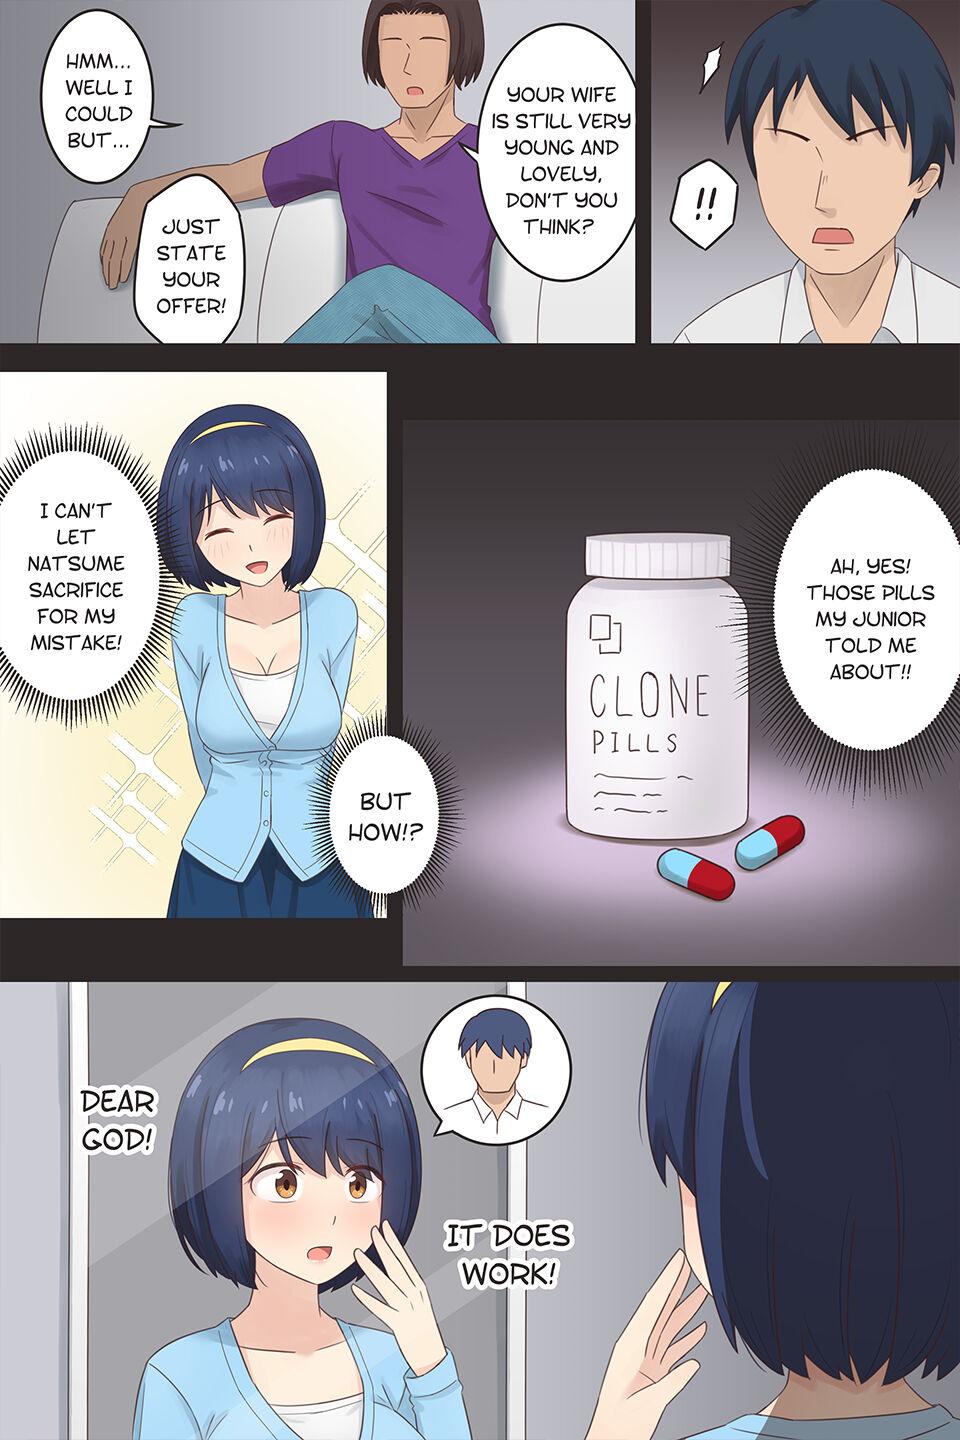 Salope The Clone Pill Case.2 - Natsume - Original Cocks - Picture 3